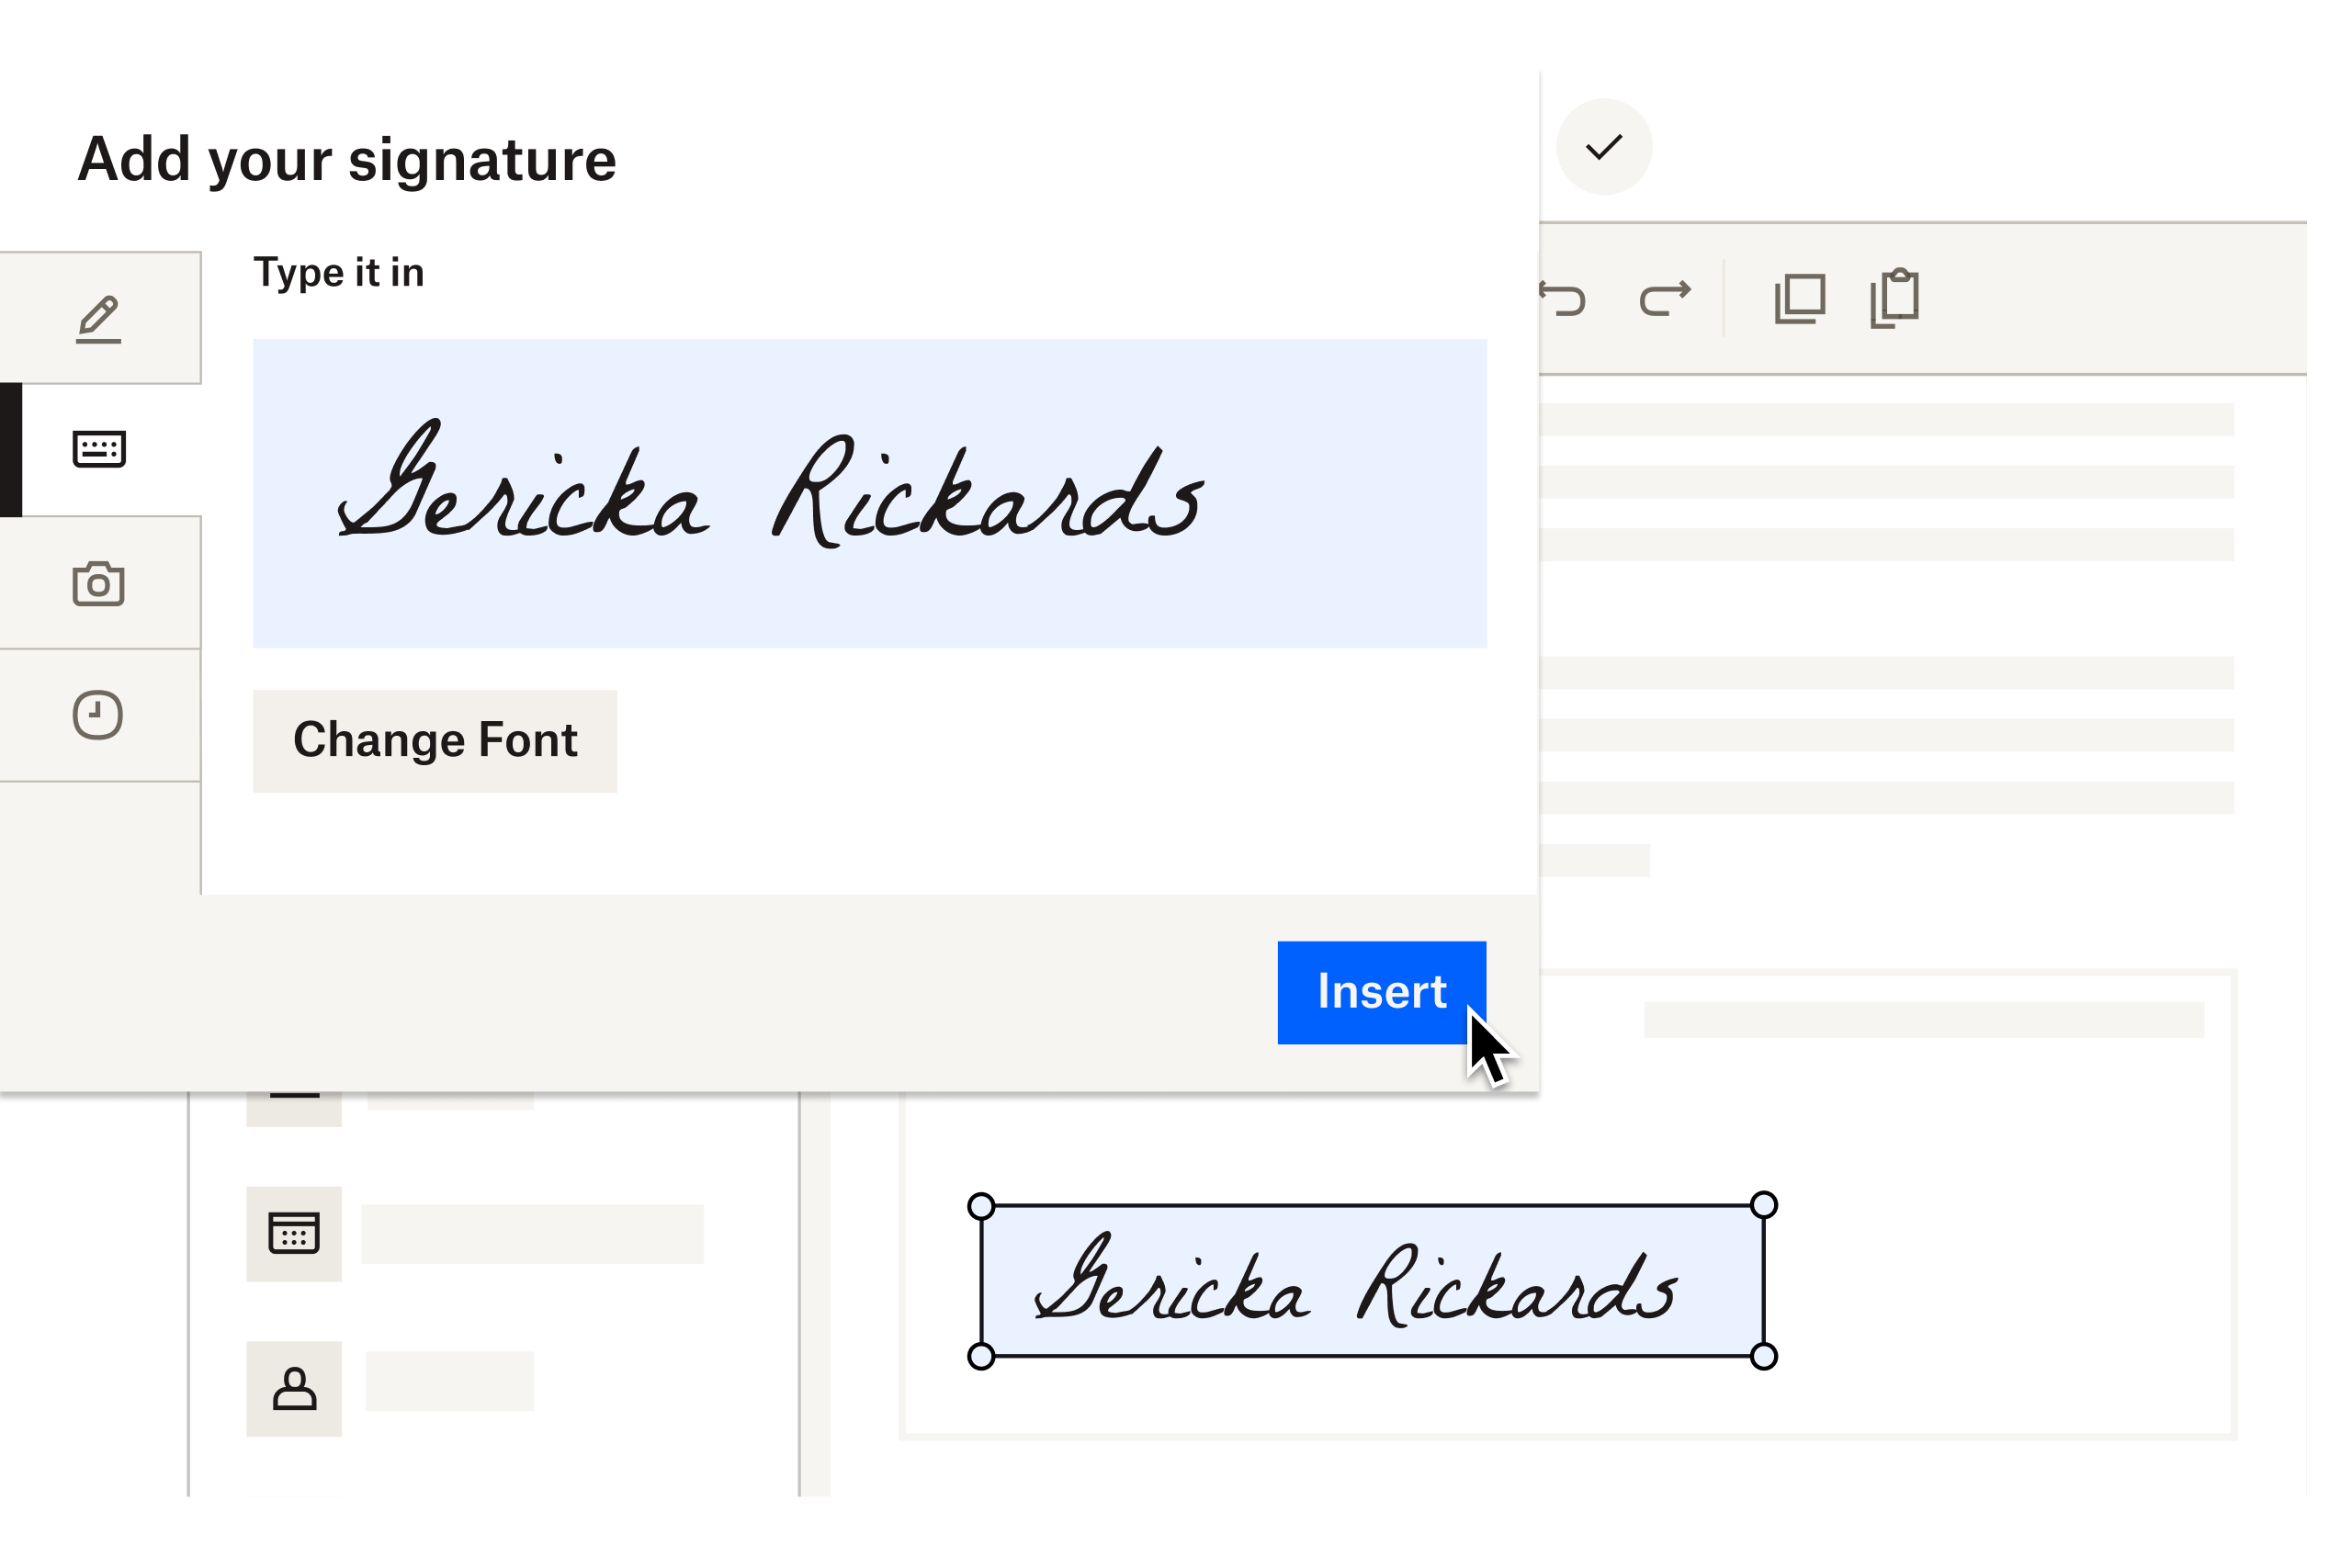 Снимок экрана пользователя, который добавляет свою электронную подпись в документ.